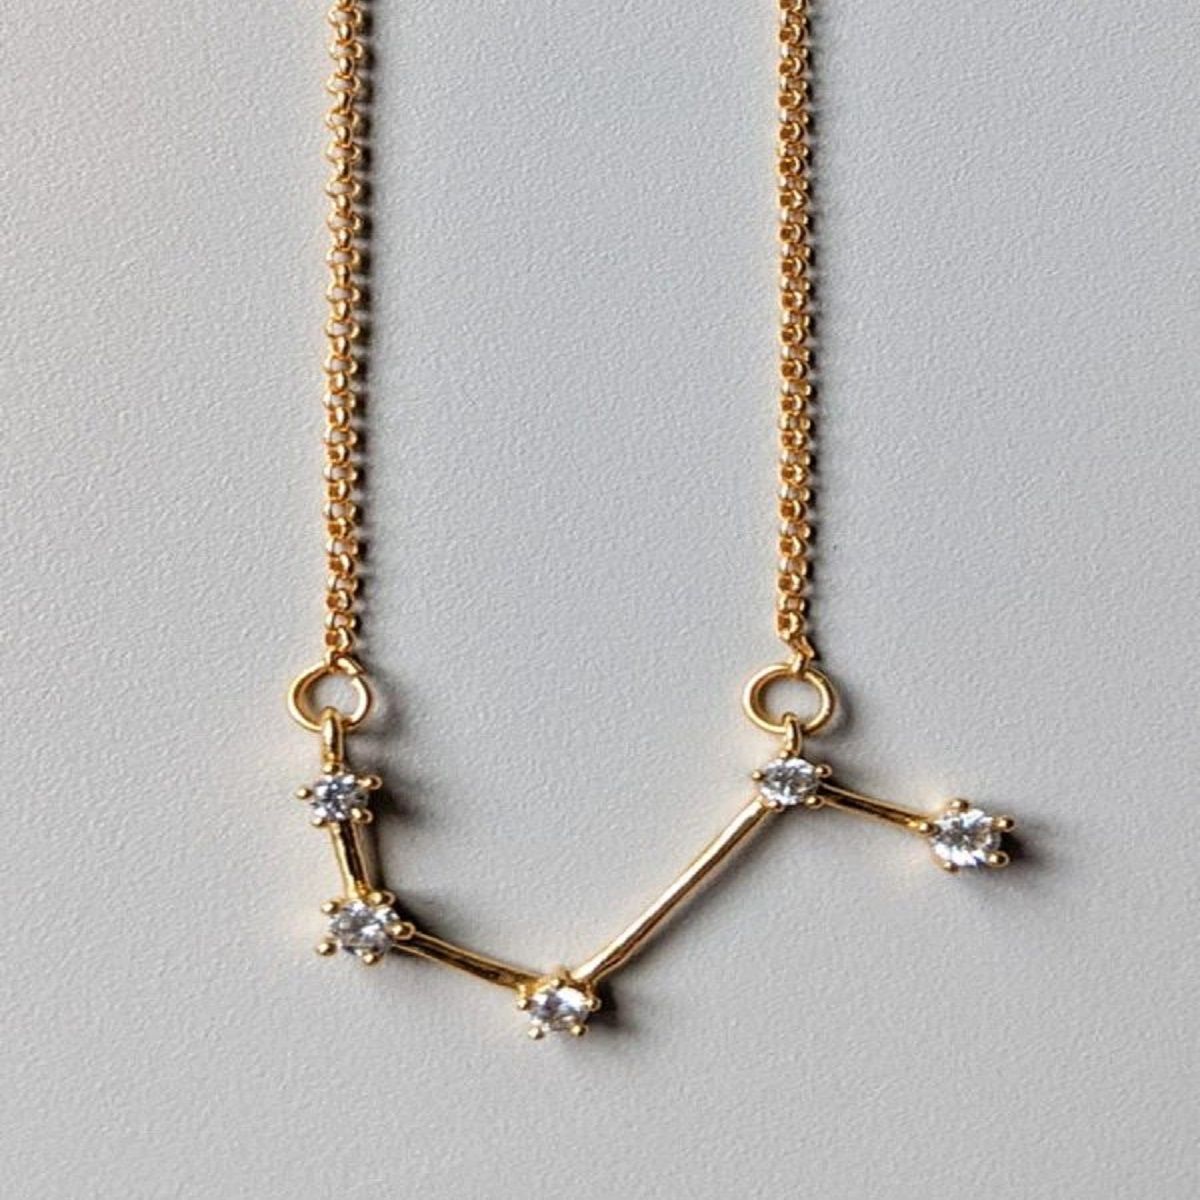 Anavia Zodiac Necklace Birthday Gifts for Girlfriend - Stainless Steel  Zodiac Constellation Crystal Necklace - Zodiac Dainty Jewelry for Women  [Silver, Aries] - Walmart.com